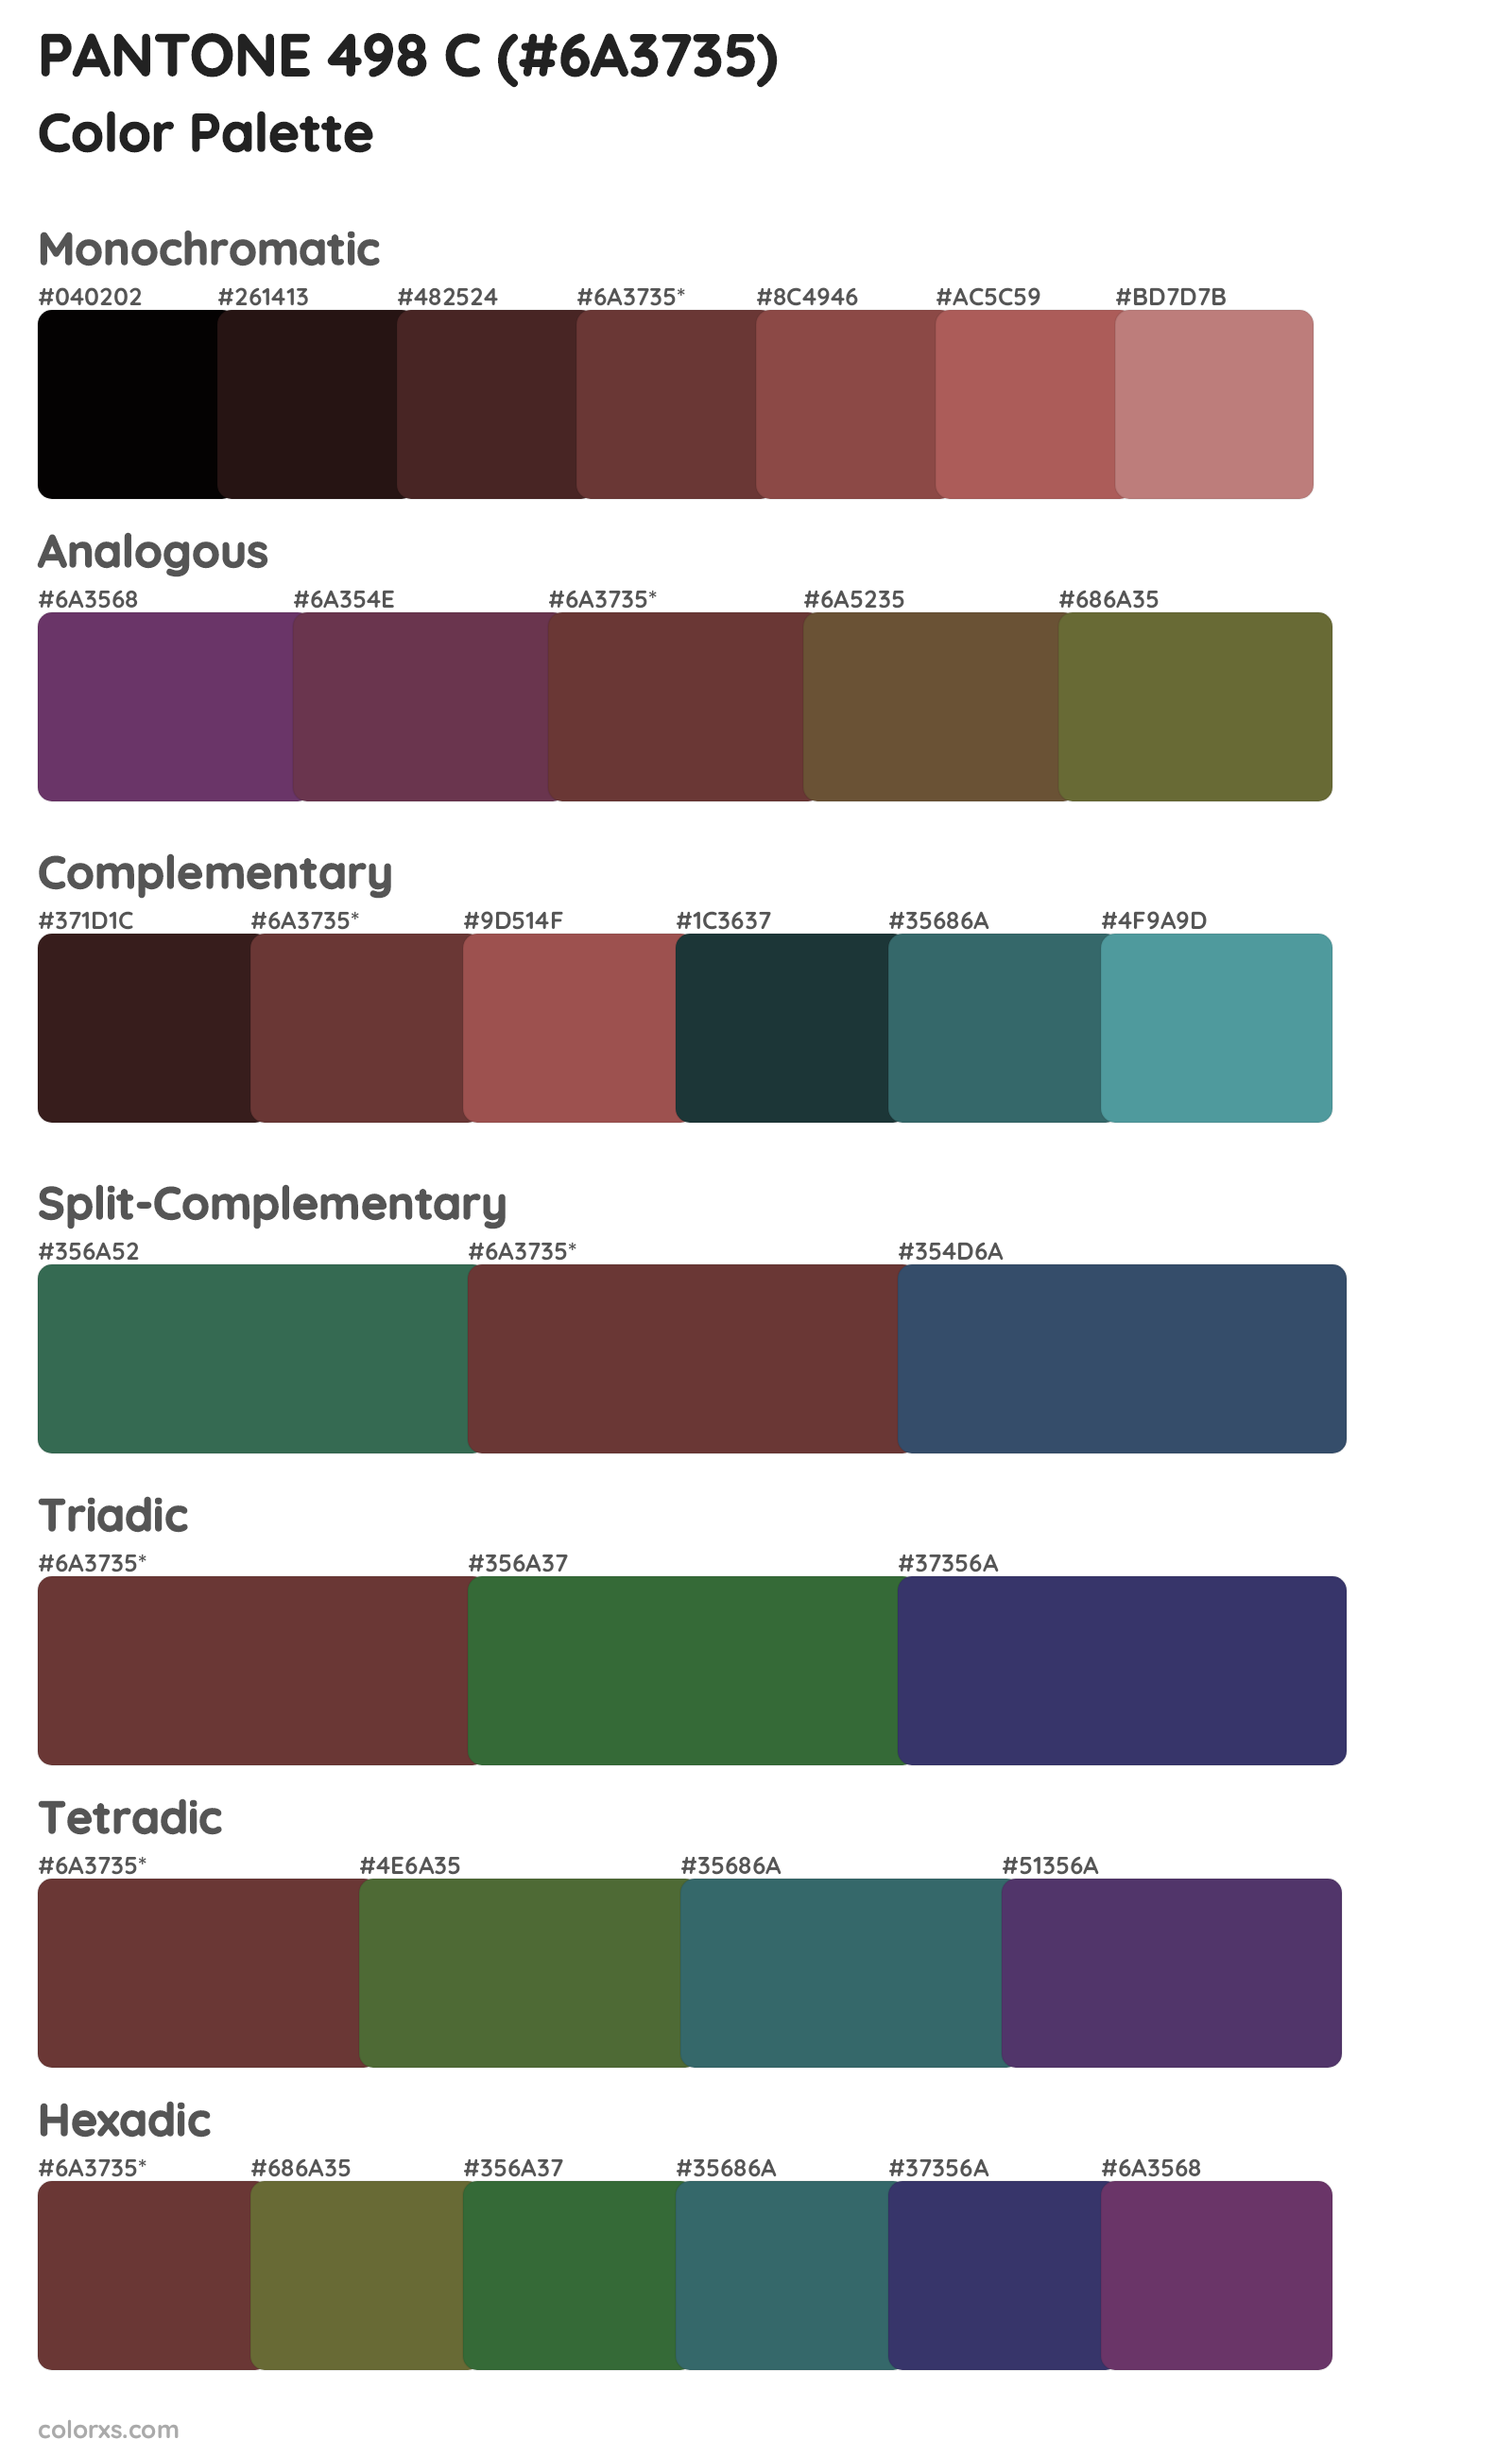 PANTONE 498 C Color Scheme Palettes